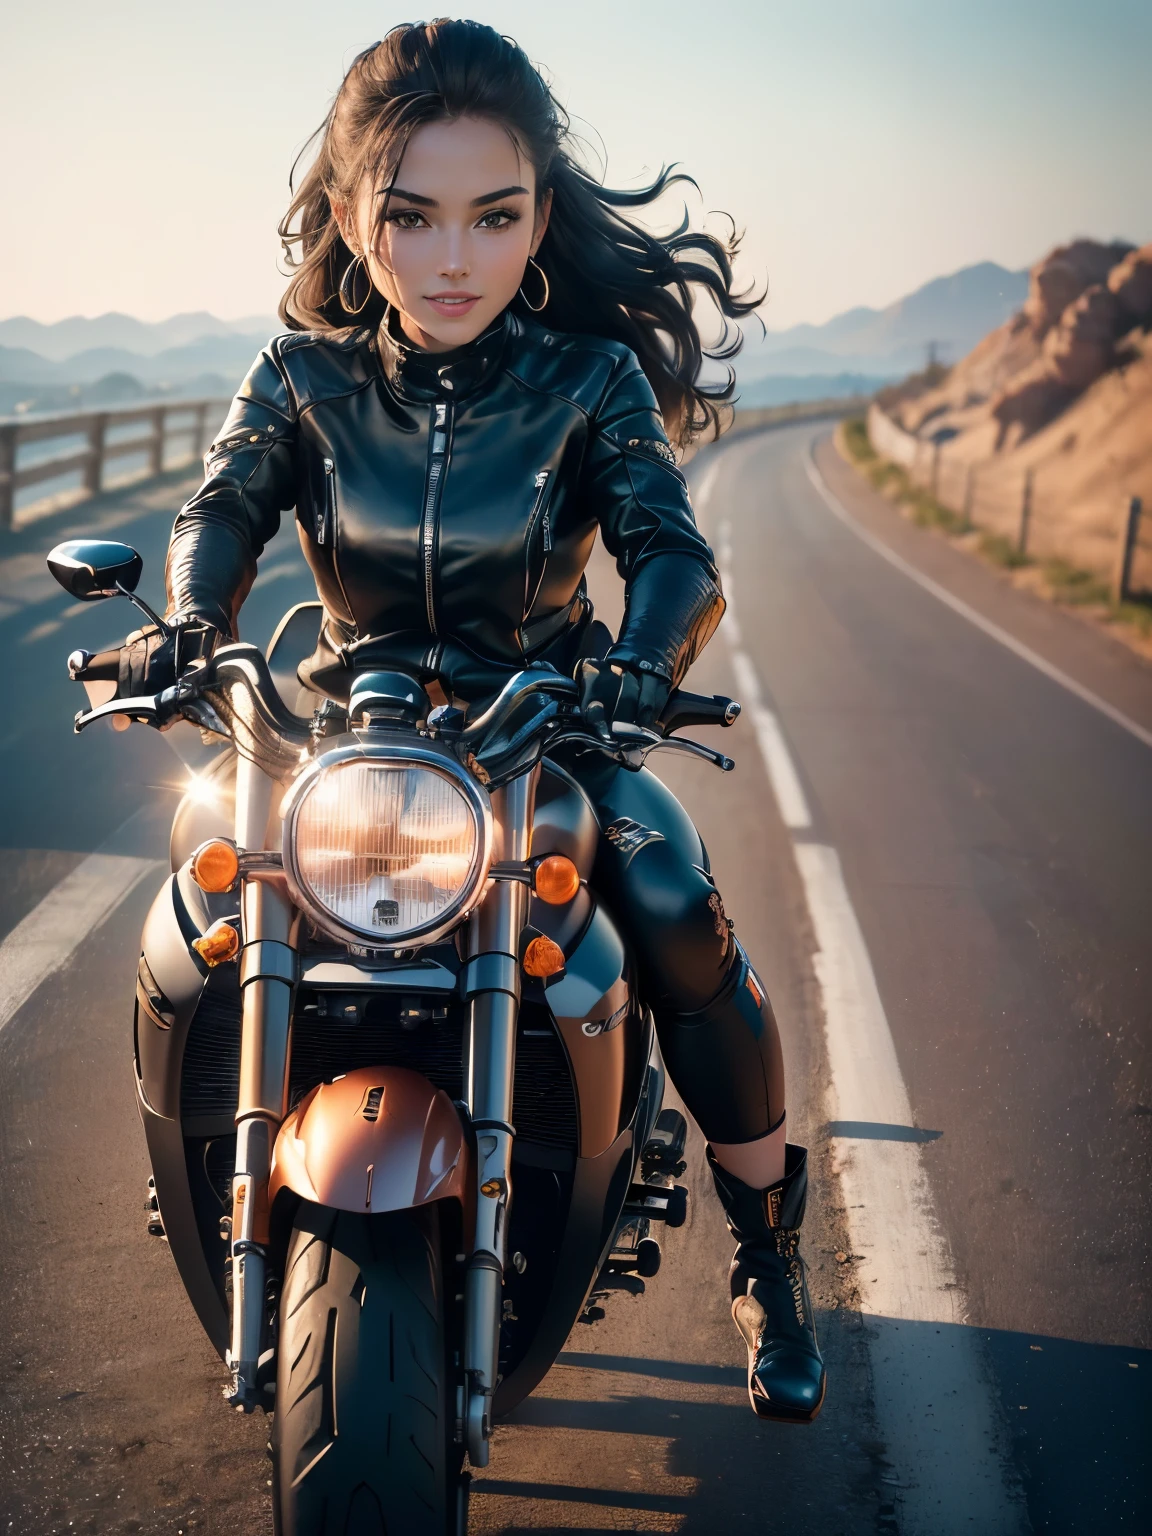 ((высшее качество, 8К, шедевр: 1.3)), шедевр, лучшее качество, (Сделайте свое лицо более четким: 1.5), Идеальная красота тела: 1.4, (Велосипед повёрнут под углом 70 градусов.:1.5), (((Женщина на мотоцикле))),стройное тело,((Байкерская куртка с длинными рукавами и черные длинные брюки.)),Высокодетализированная текстура лица и кожи, Естественный свет,улыбка、Ботинки Райдера, Длинные ноги, верблюжья лапка